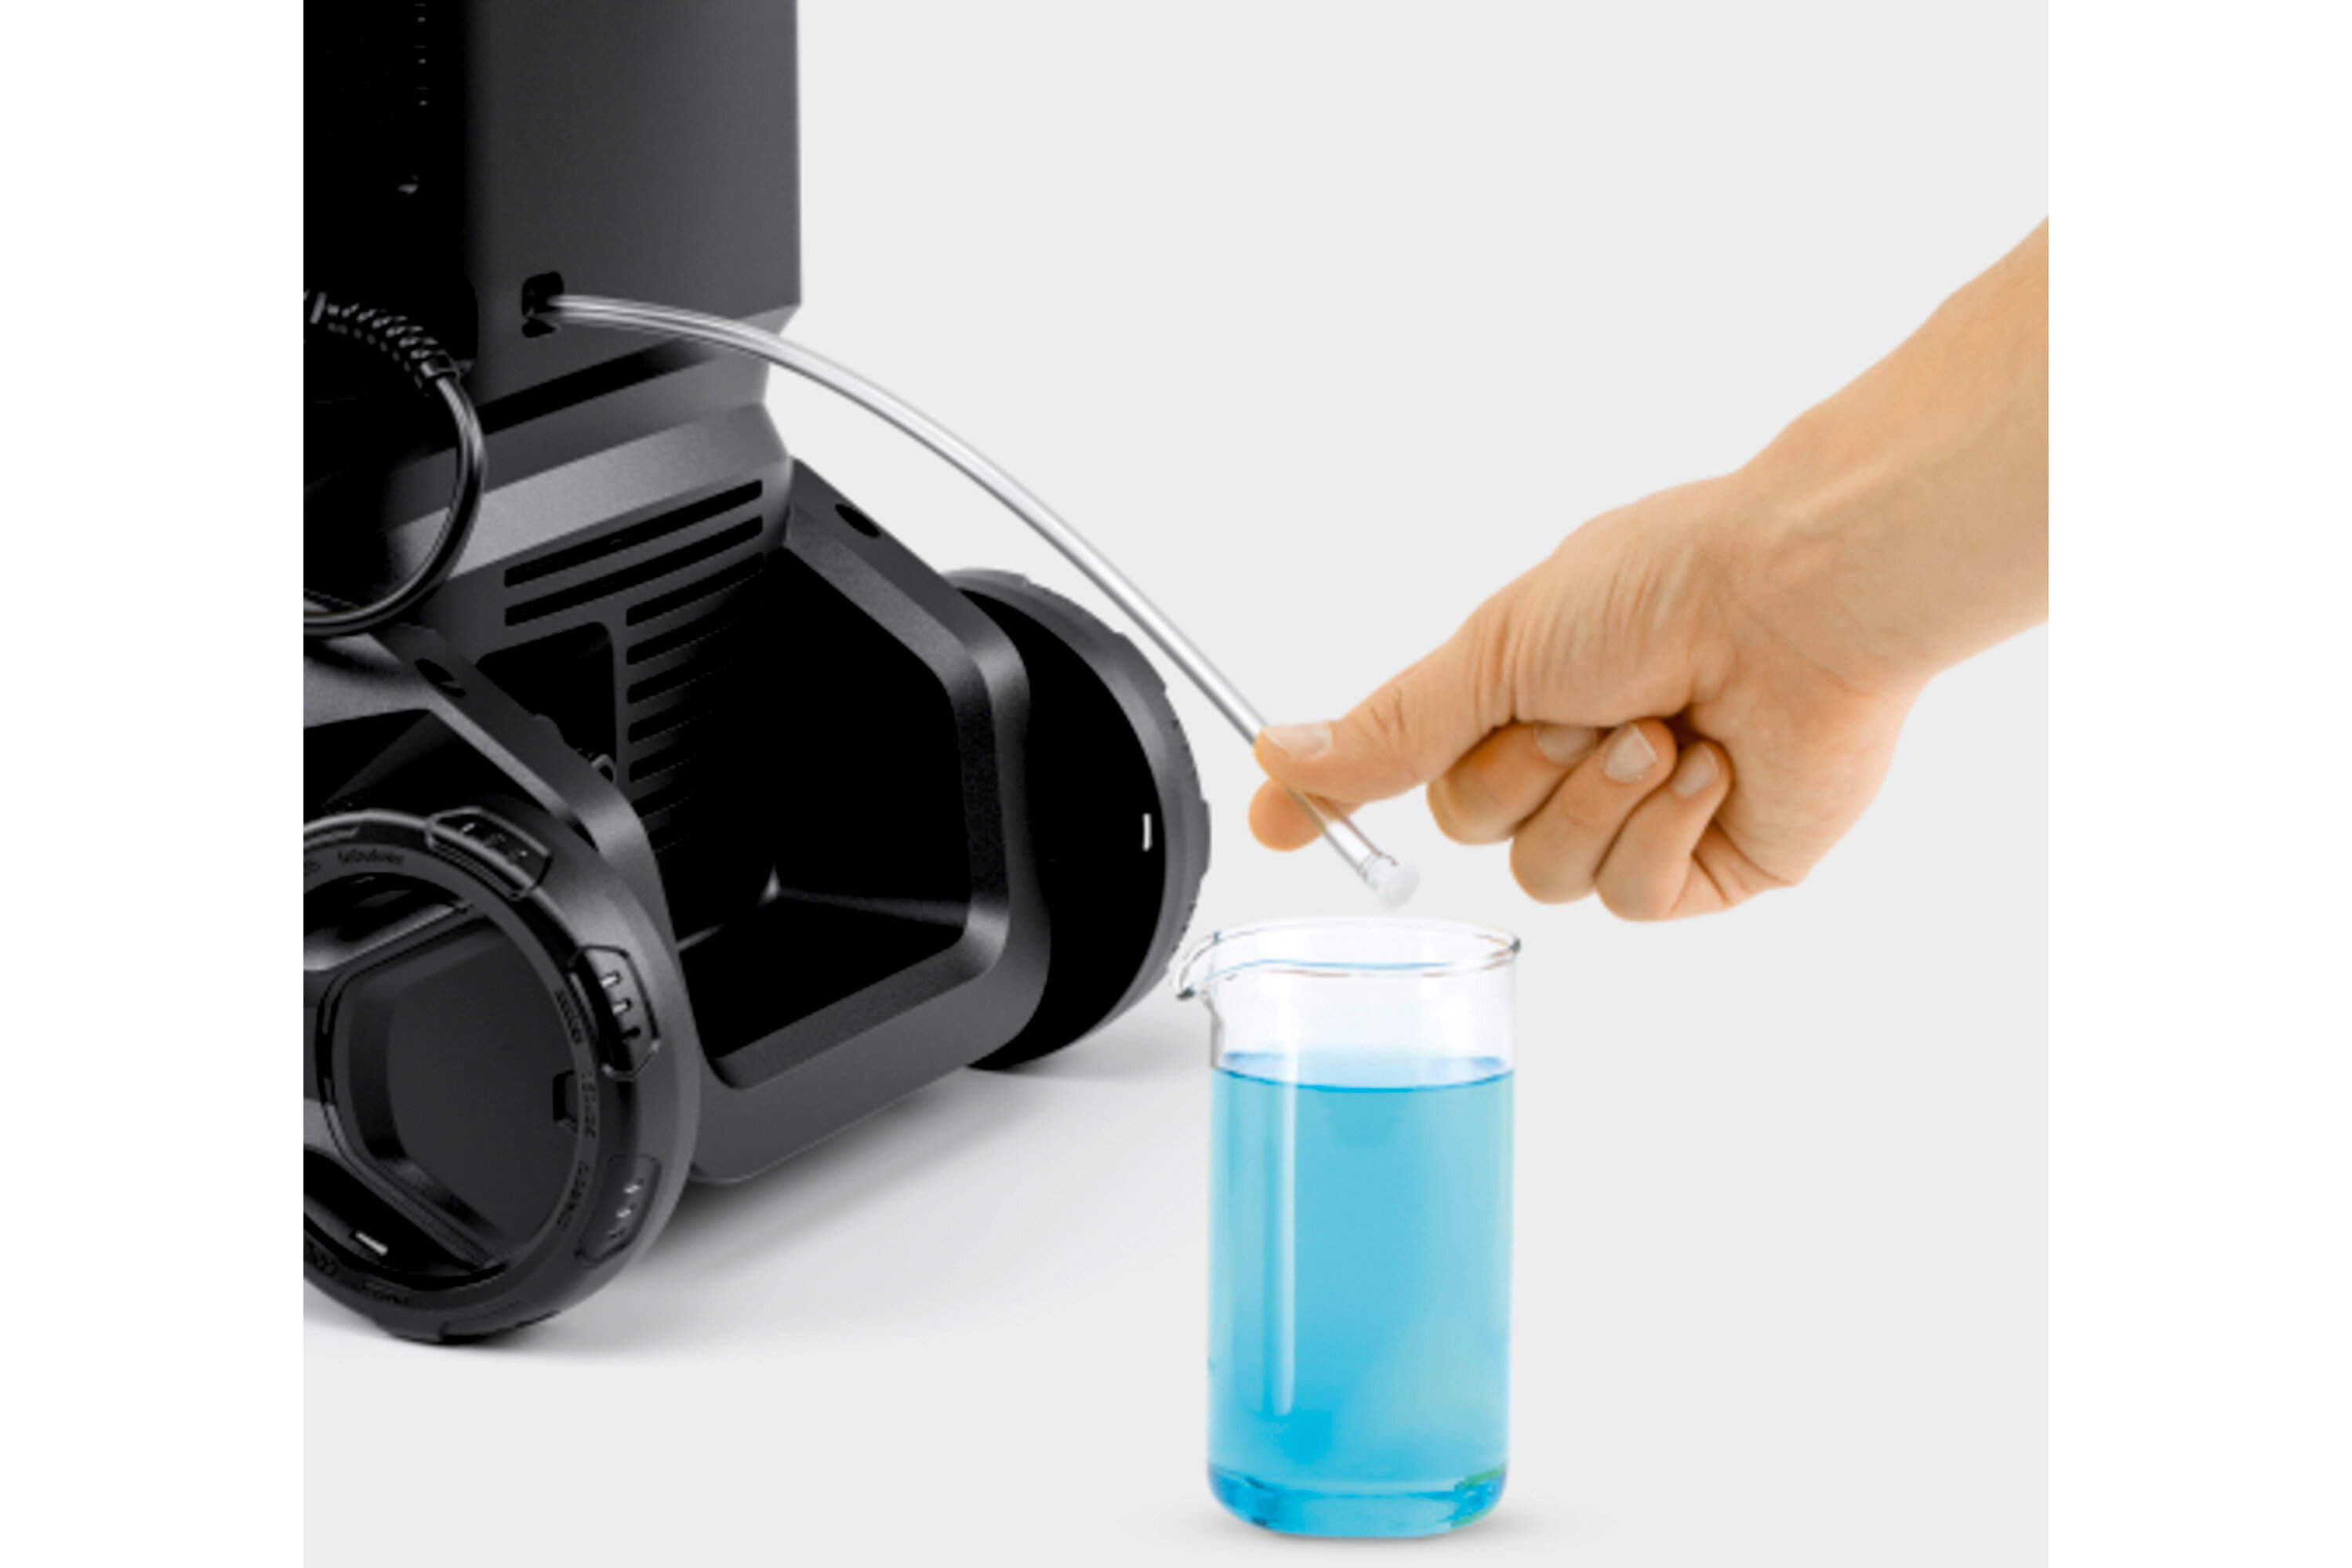 Idropulitrice K 4 Black Home: Tubo di aspirazione detergente integrato